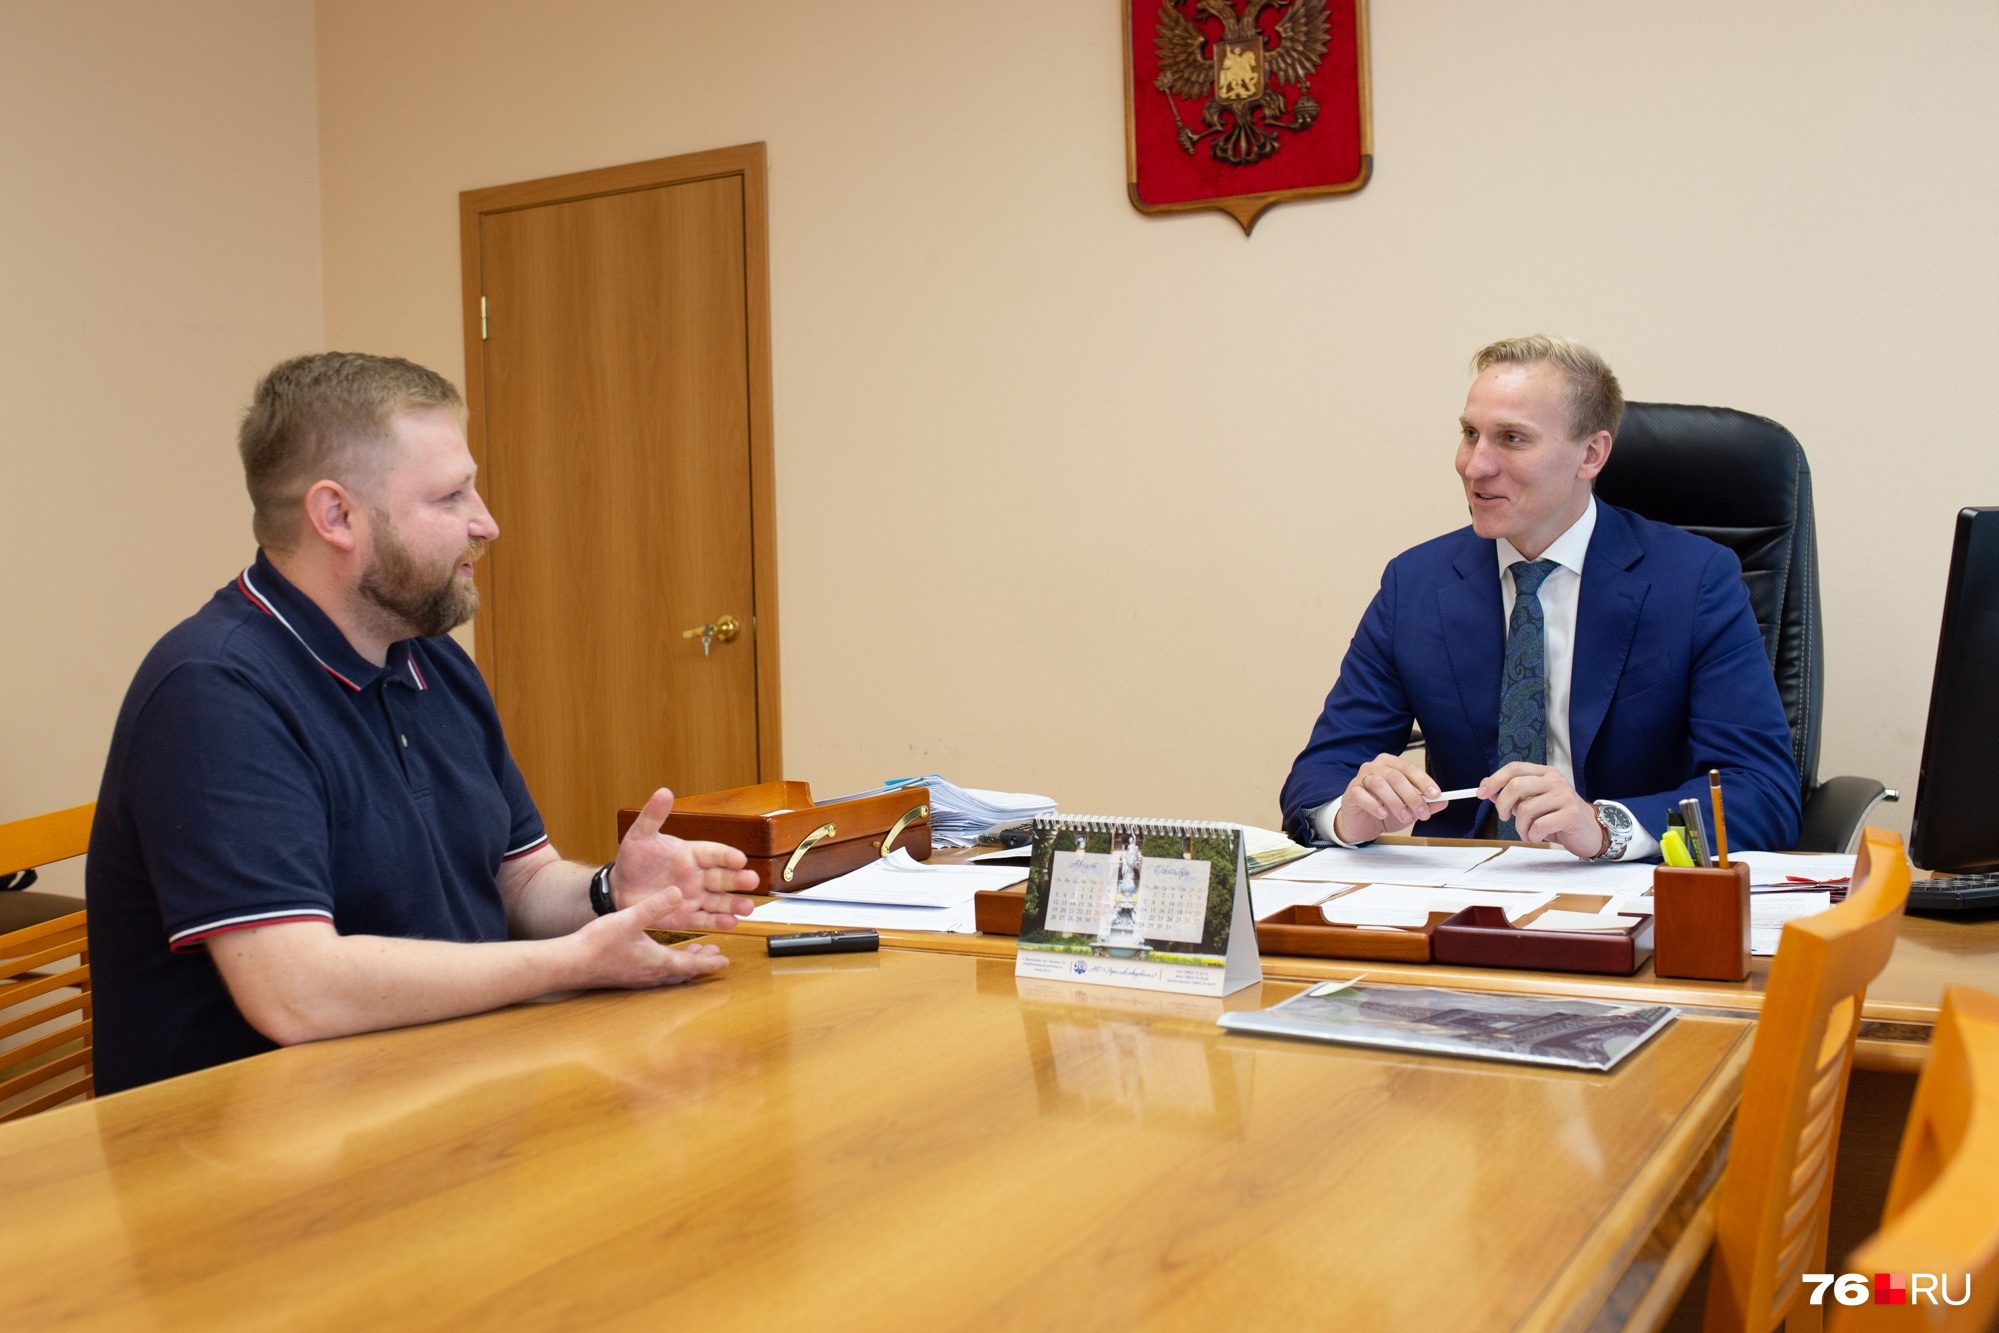 Руководитель департамента городского хозяйства ответил на вопросы журналиста 76.RU